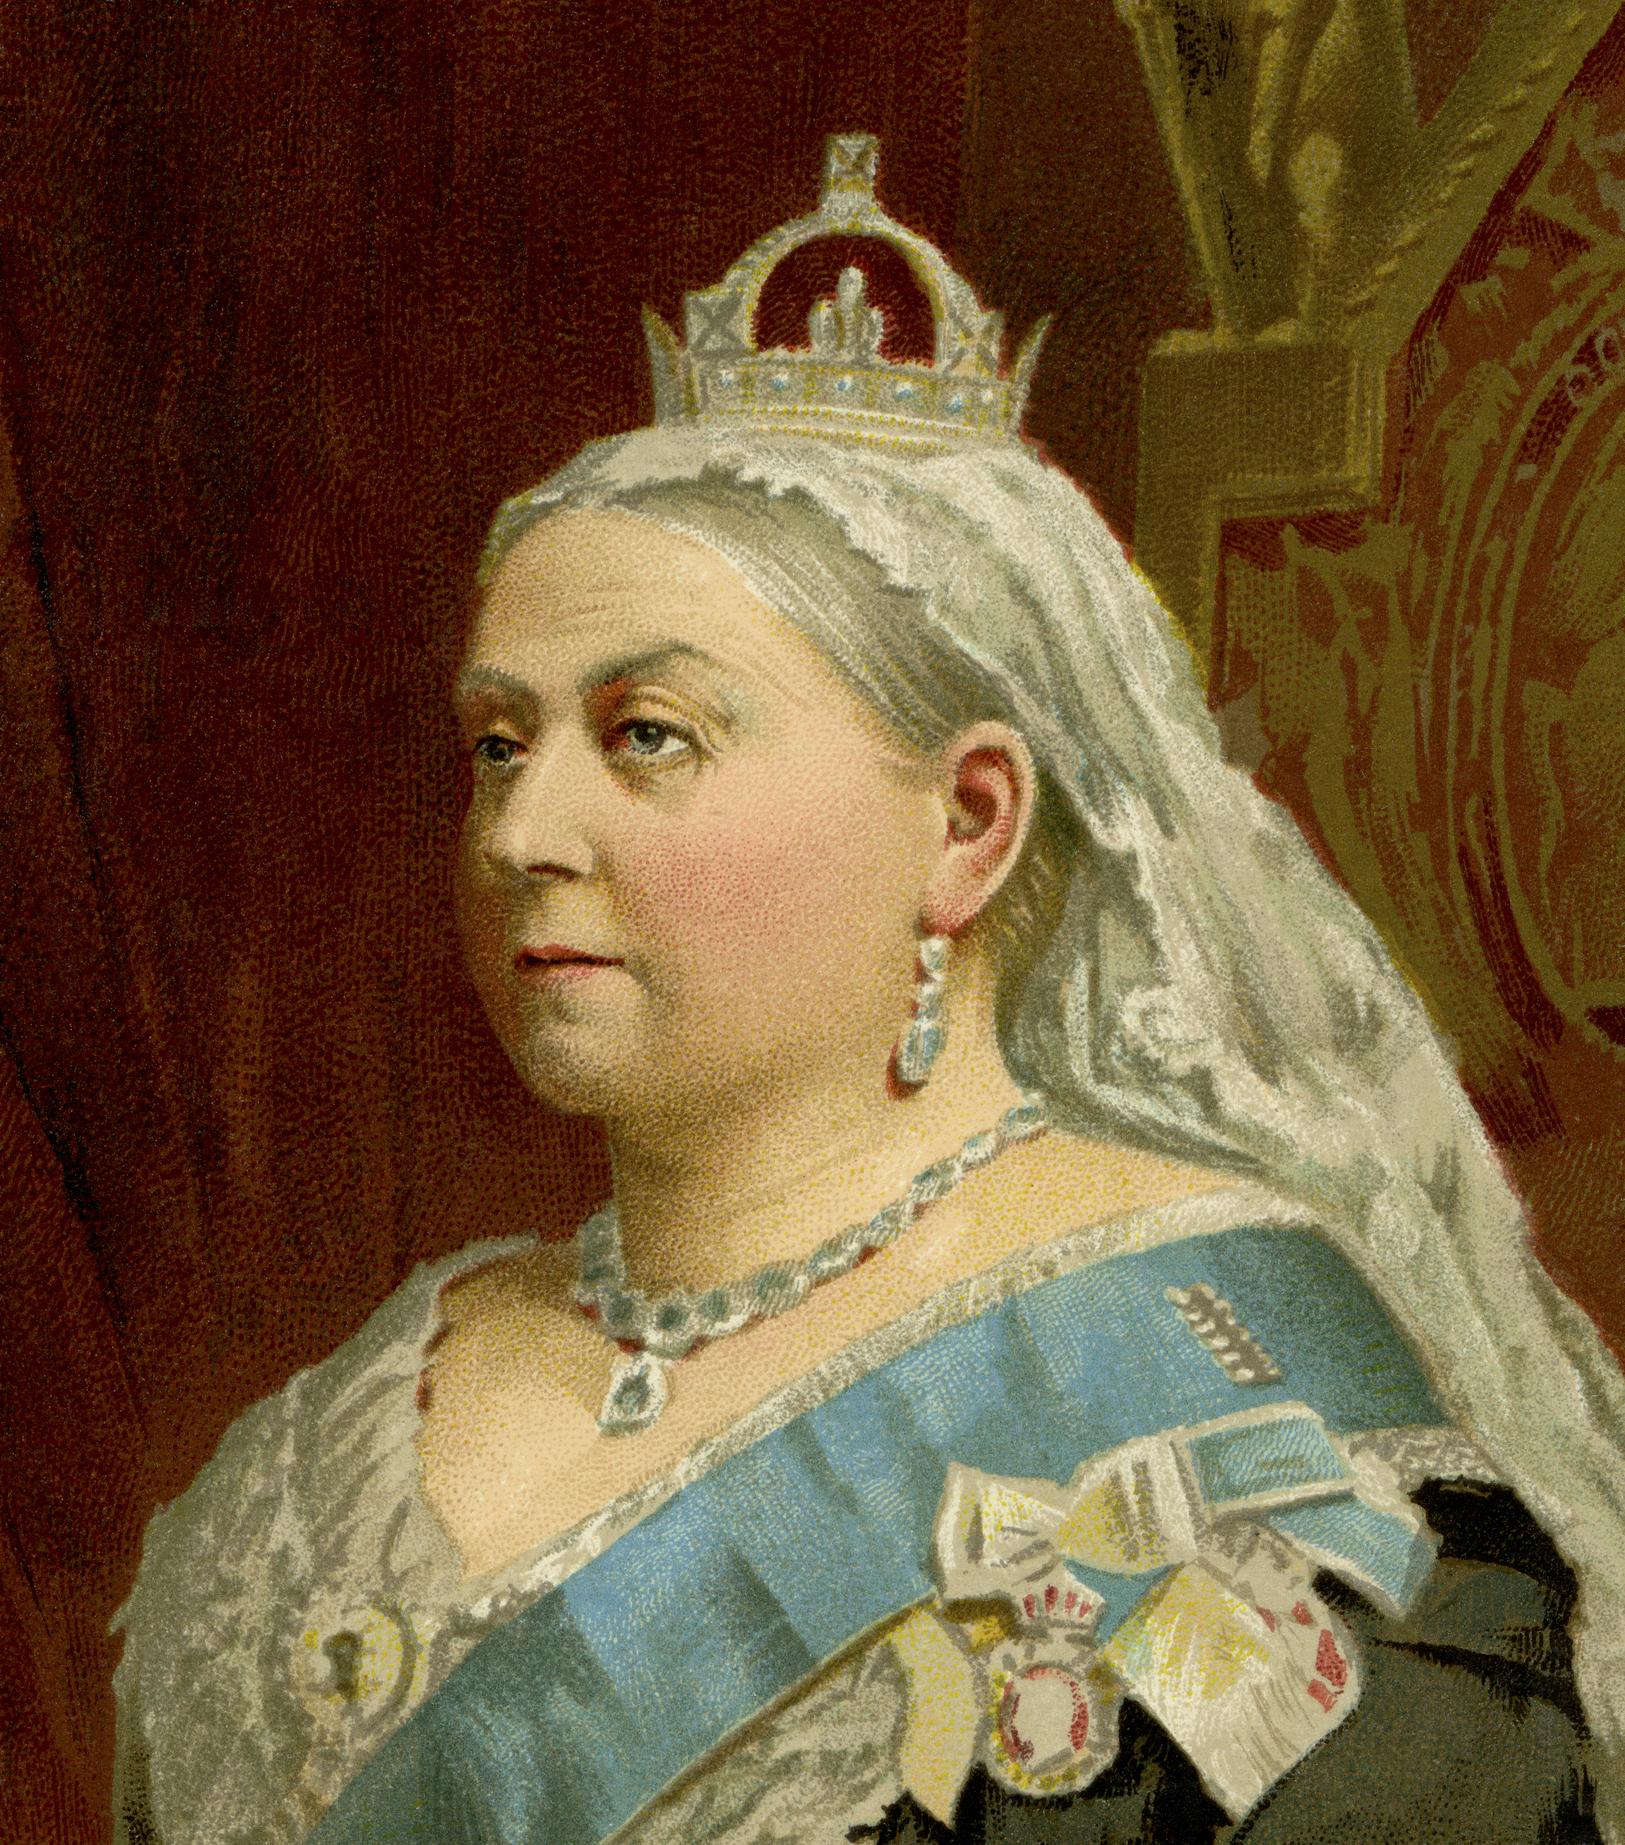 Retrato de la reina Victoria, la segunda soberana con el reinado más largo del Reino Unido.